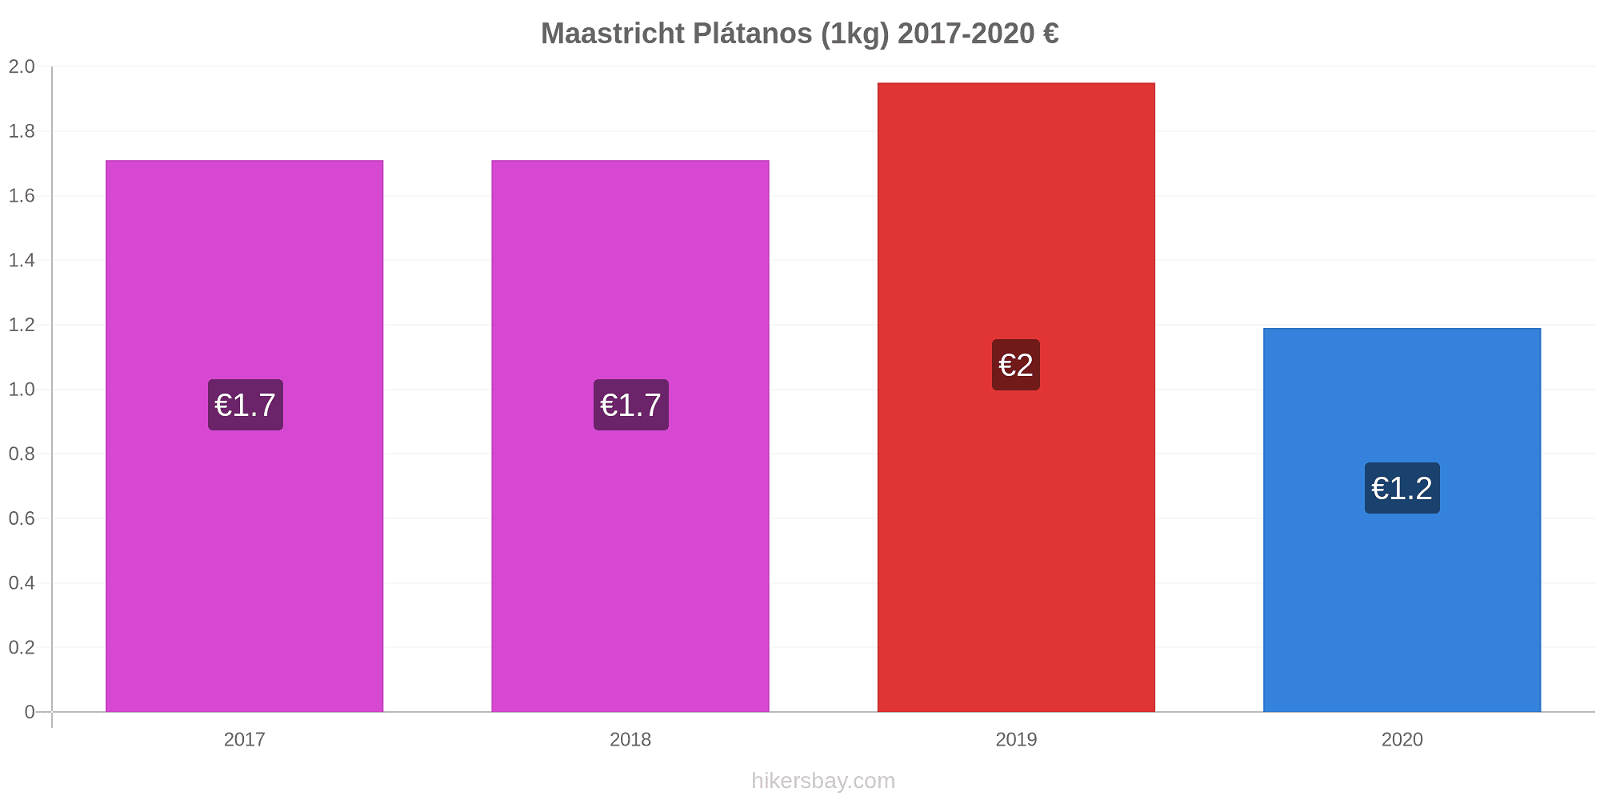 Maastricht cambios de precios Plátano (1kg) hikersbay.com